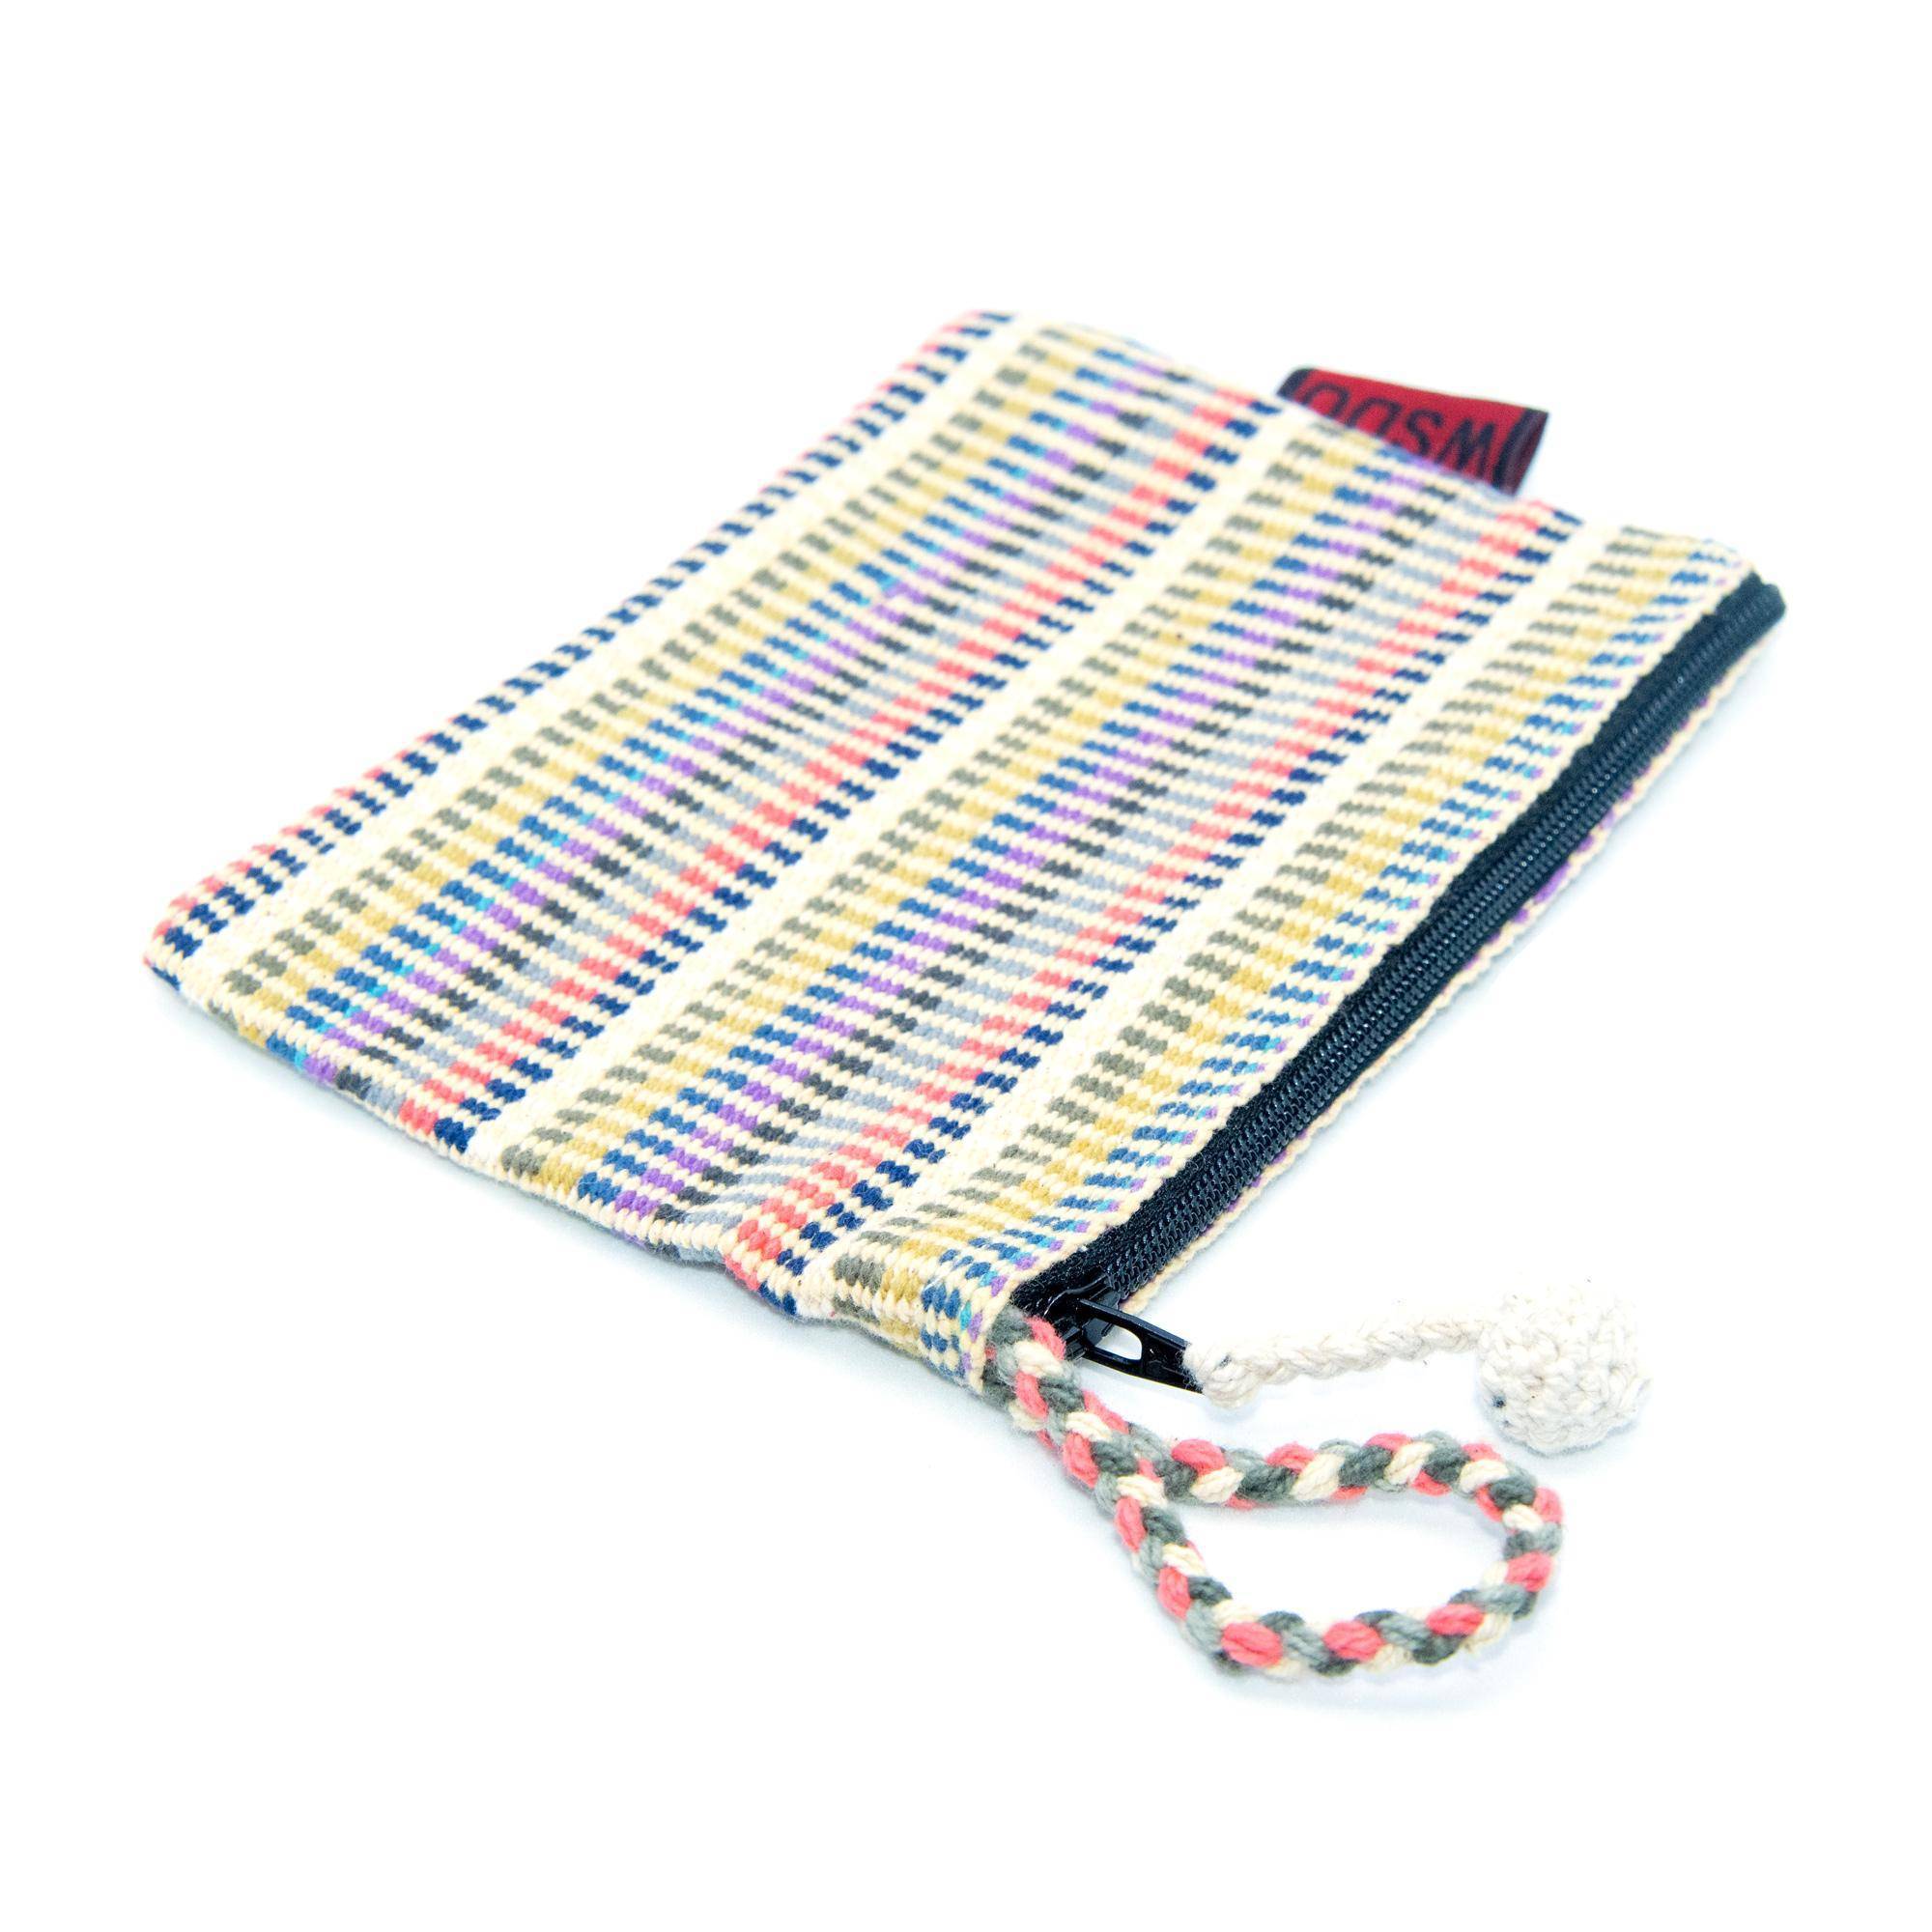 Handloomed Cotton WSDO Fair Trade Mini Bag - Multicolor